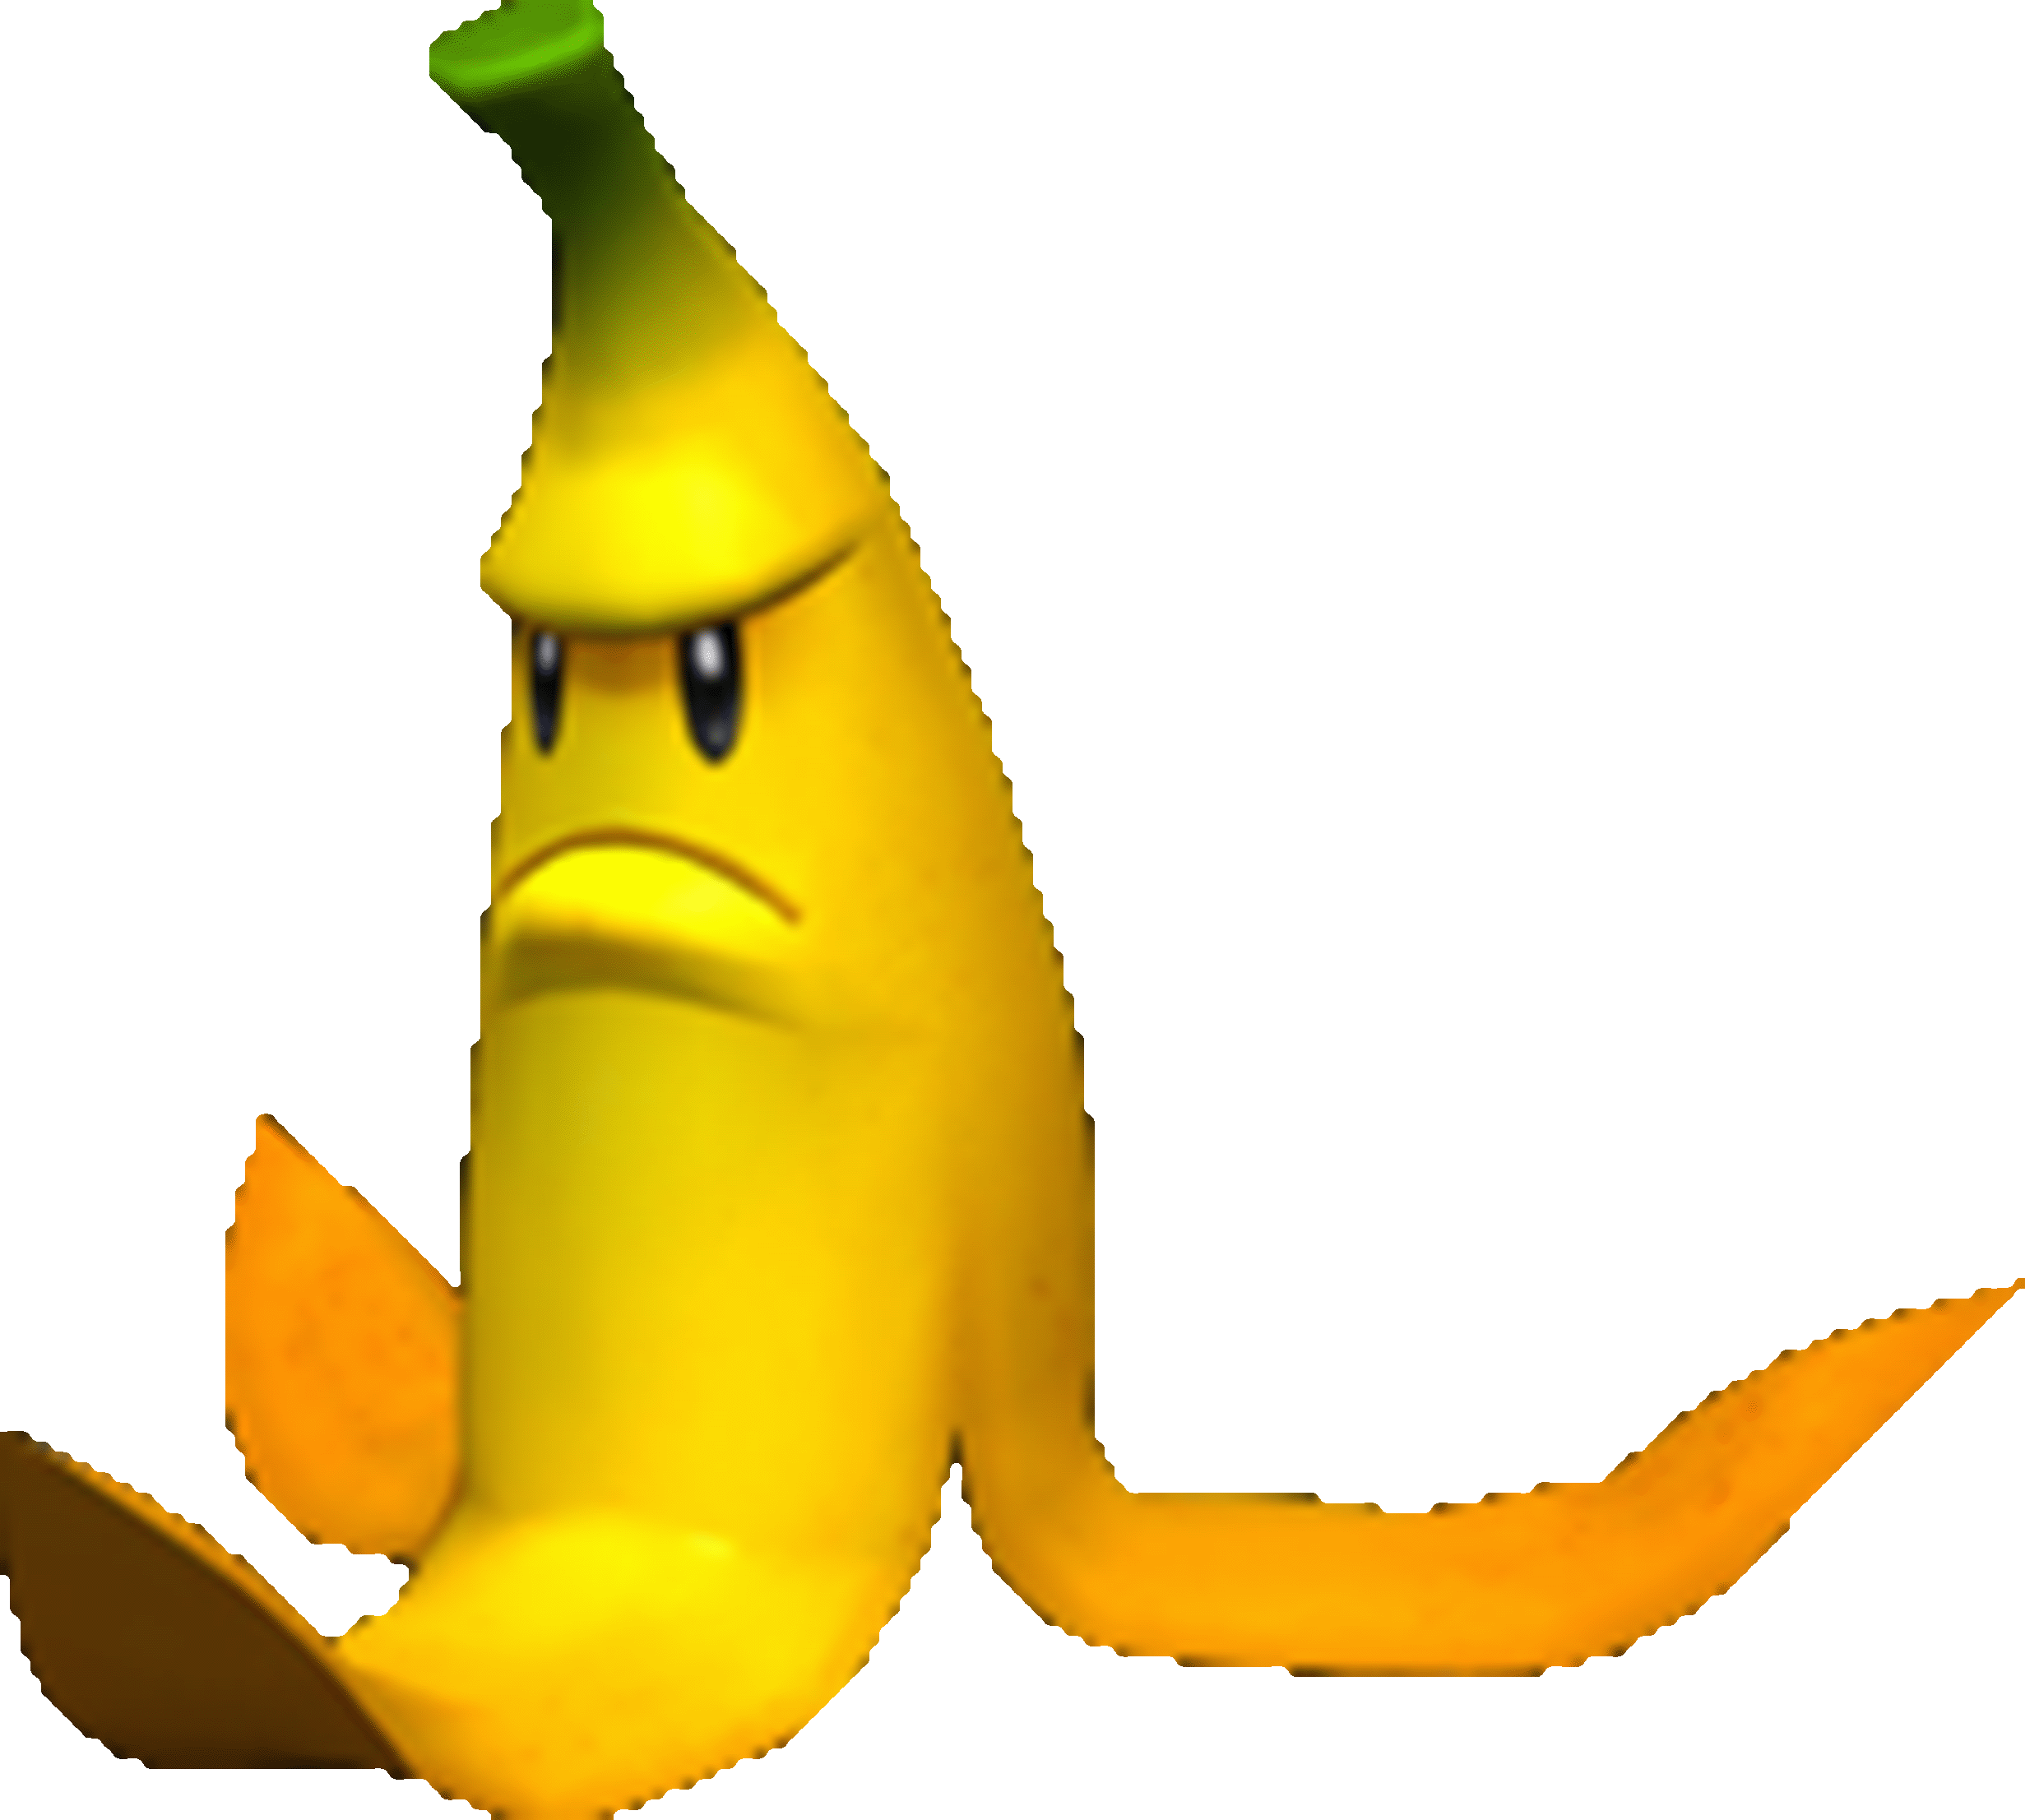 donkey kong banana peel